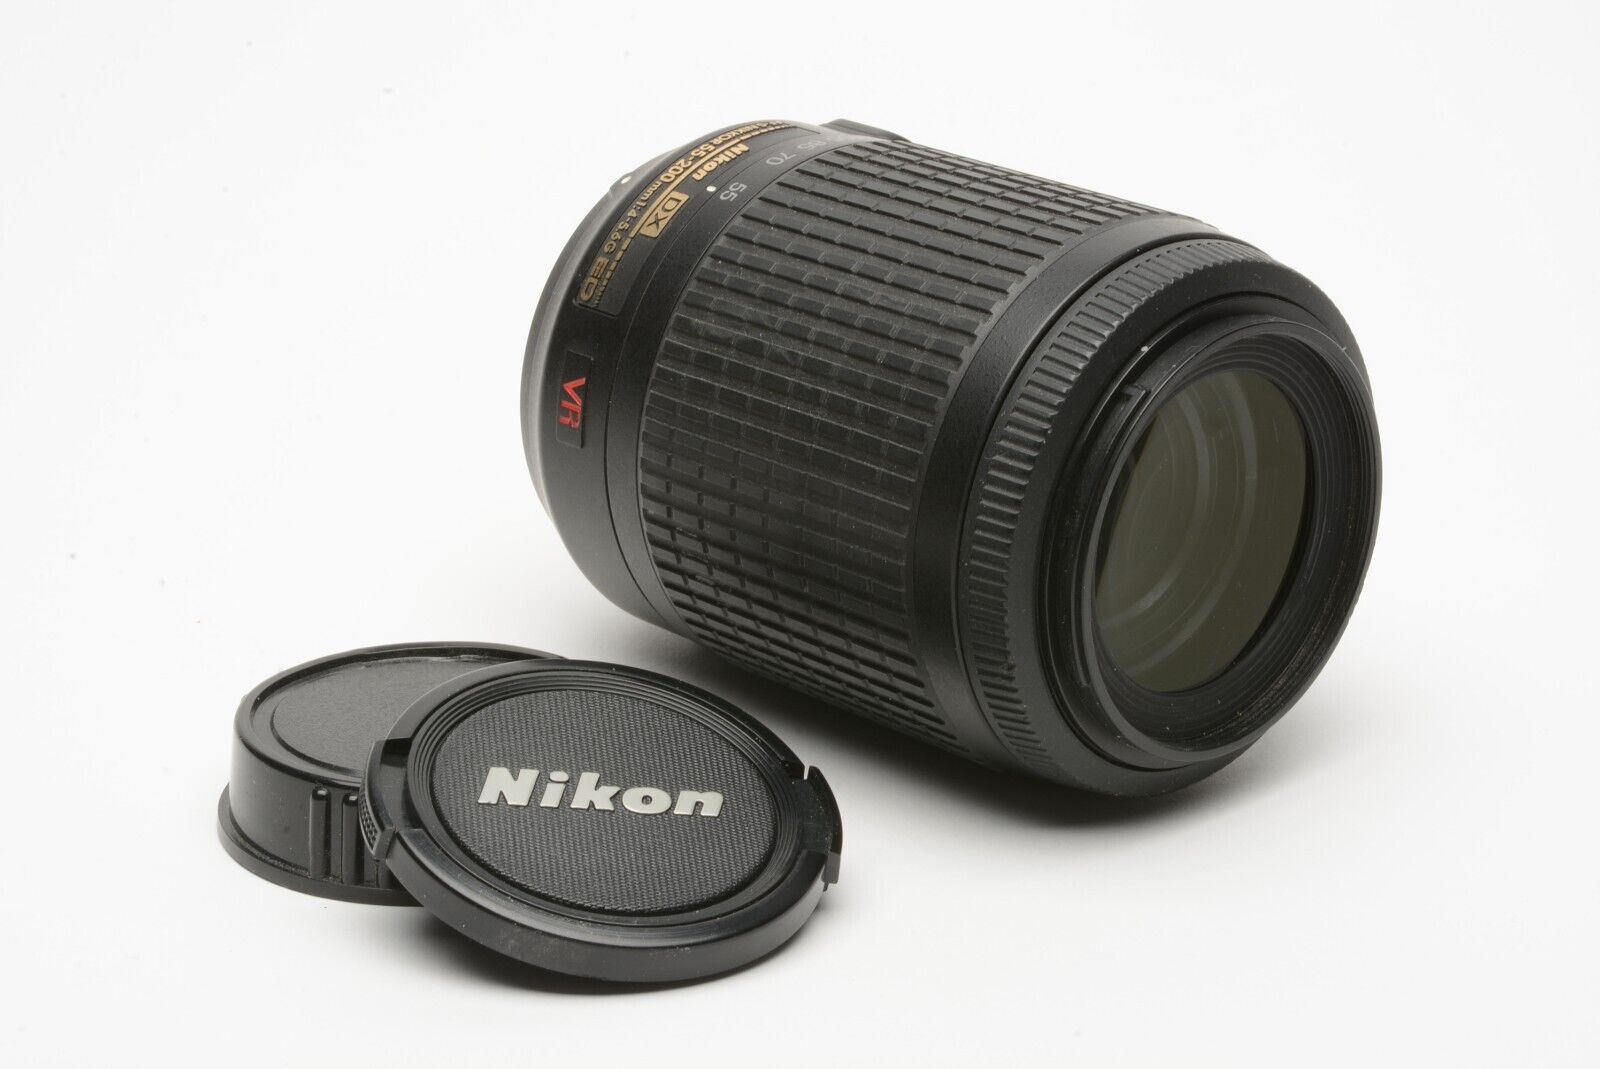 EXC++ NIKON AF-S NIKKOR 55-200mm f4-5.6G ED VR DX SWM LENS +CAPS